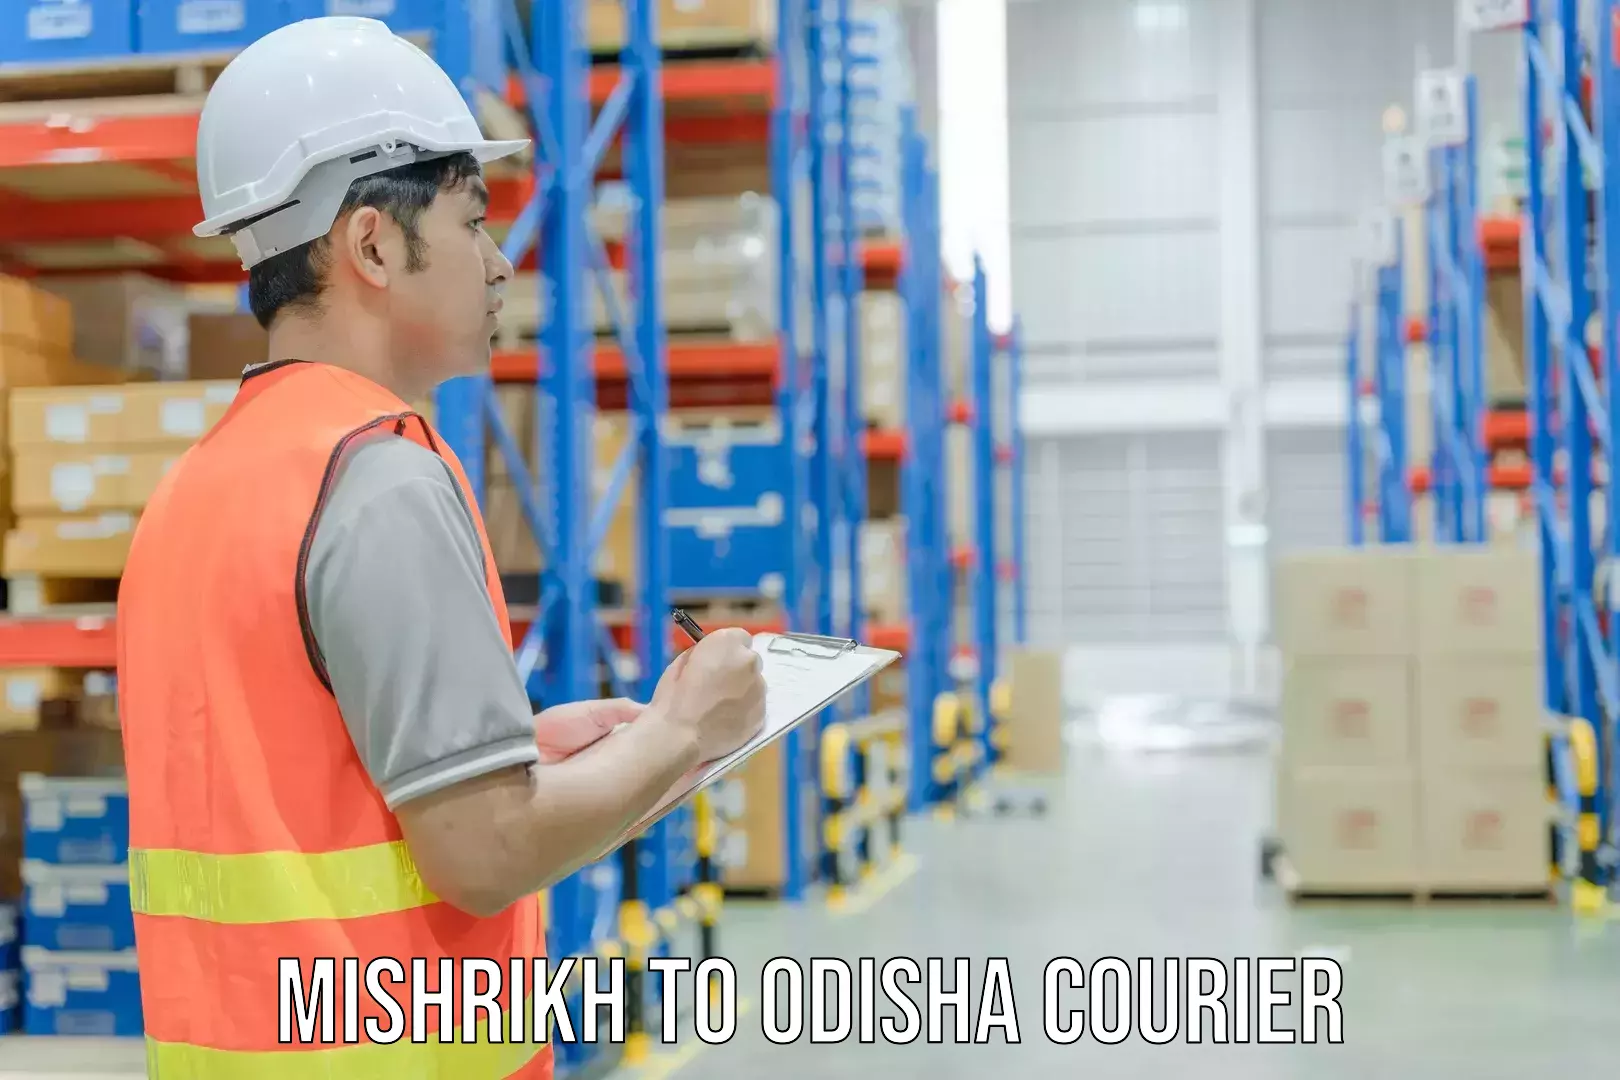 24/7 courier service Mishrikh to Adaspur